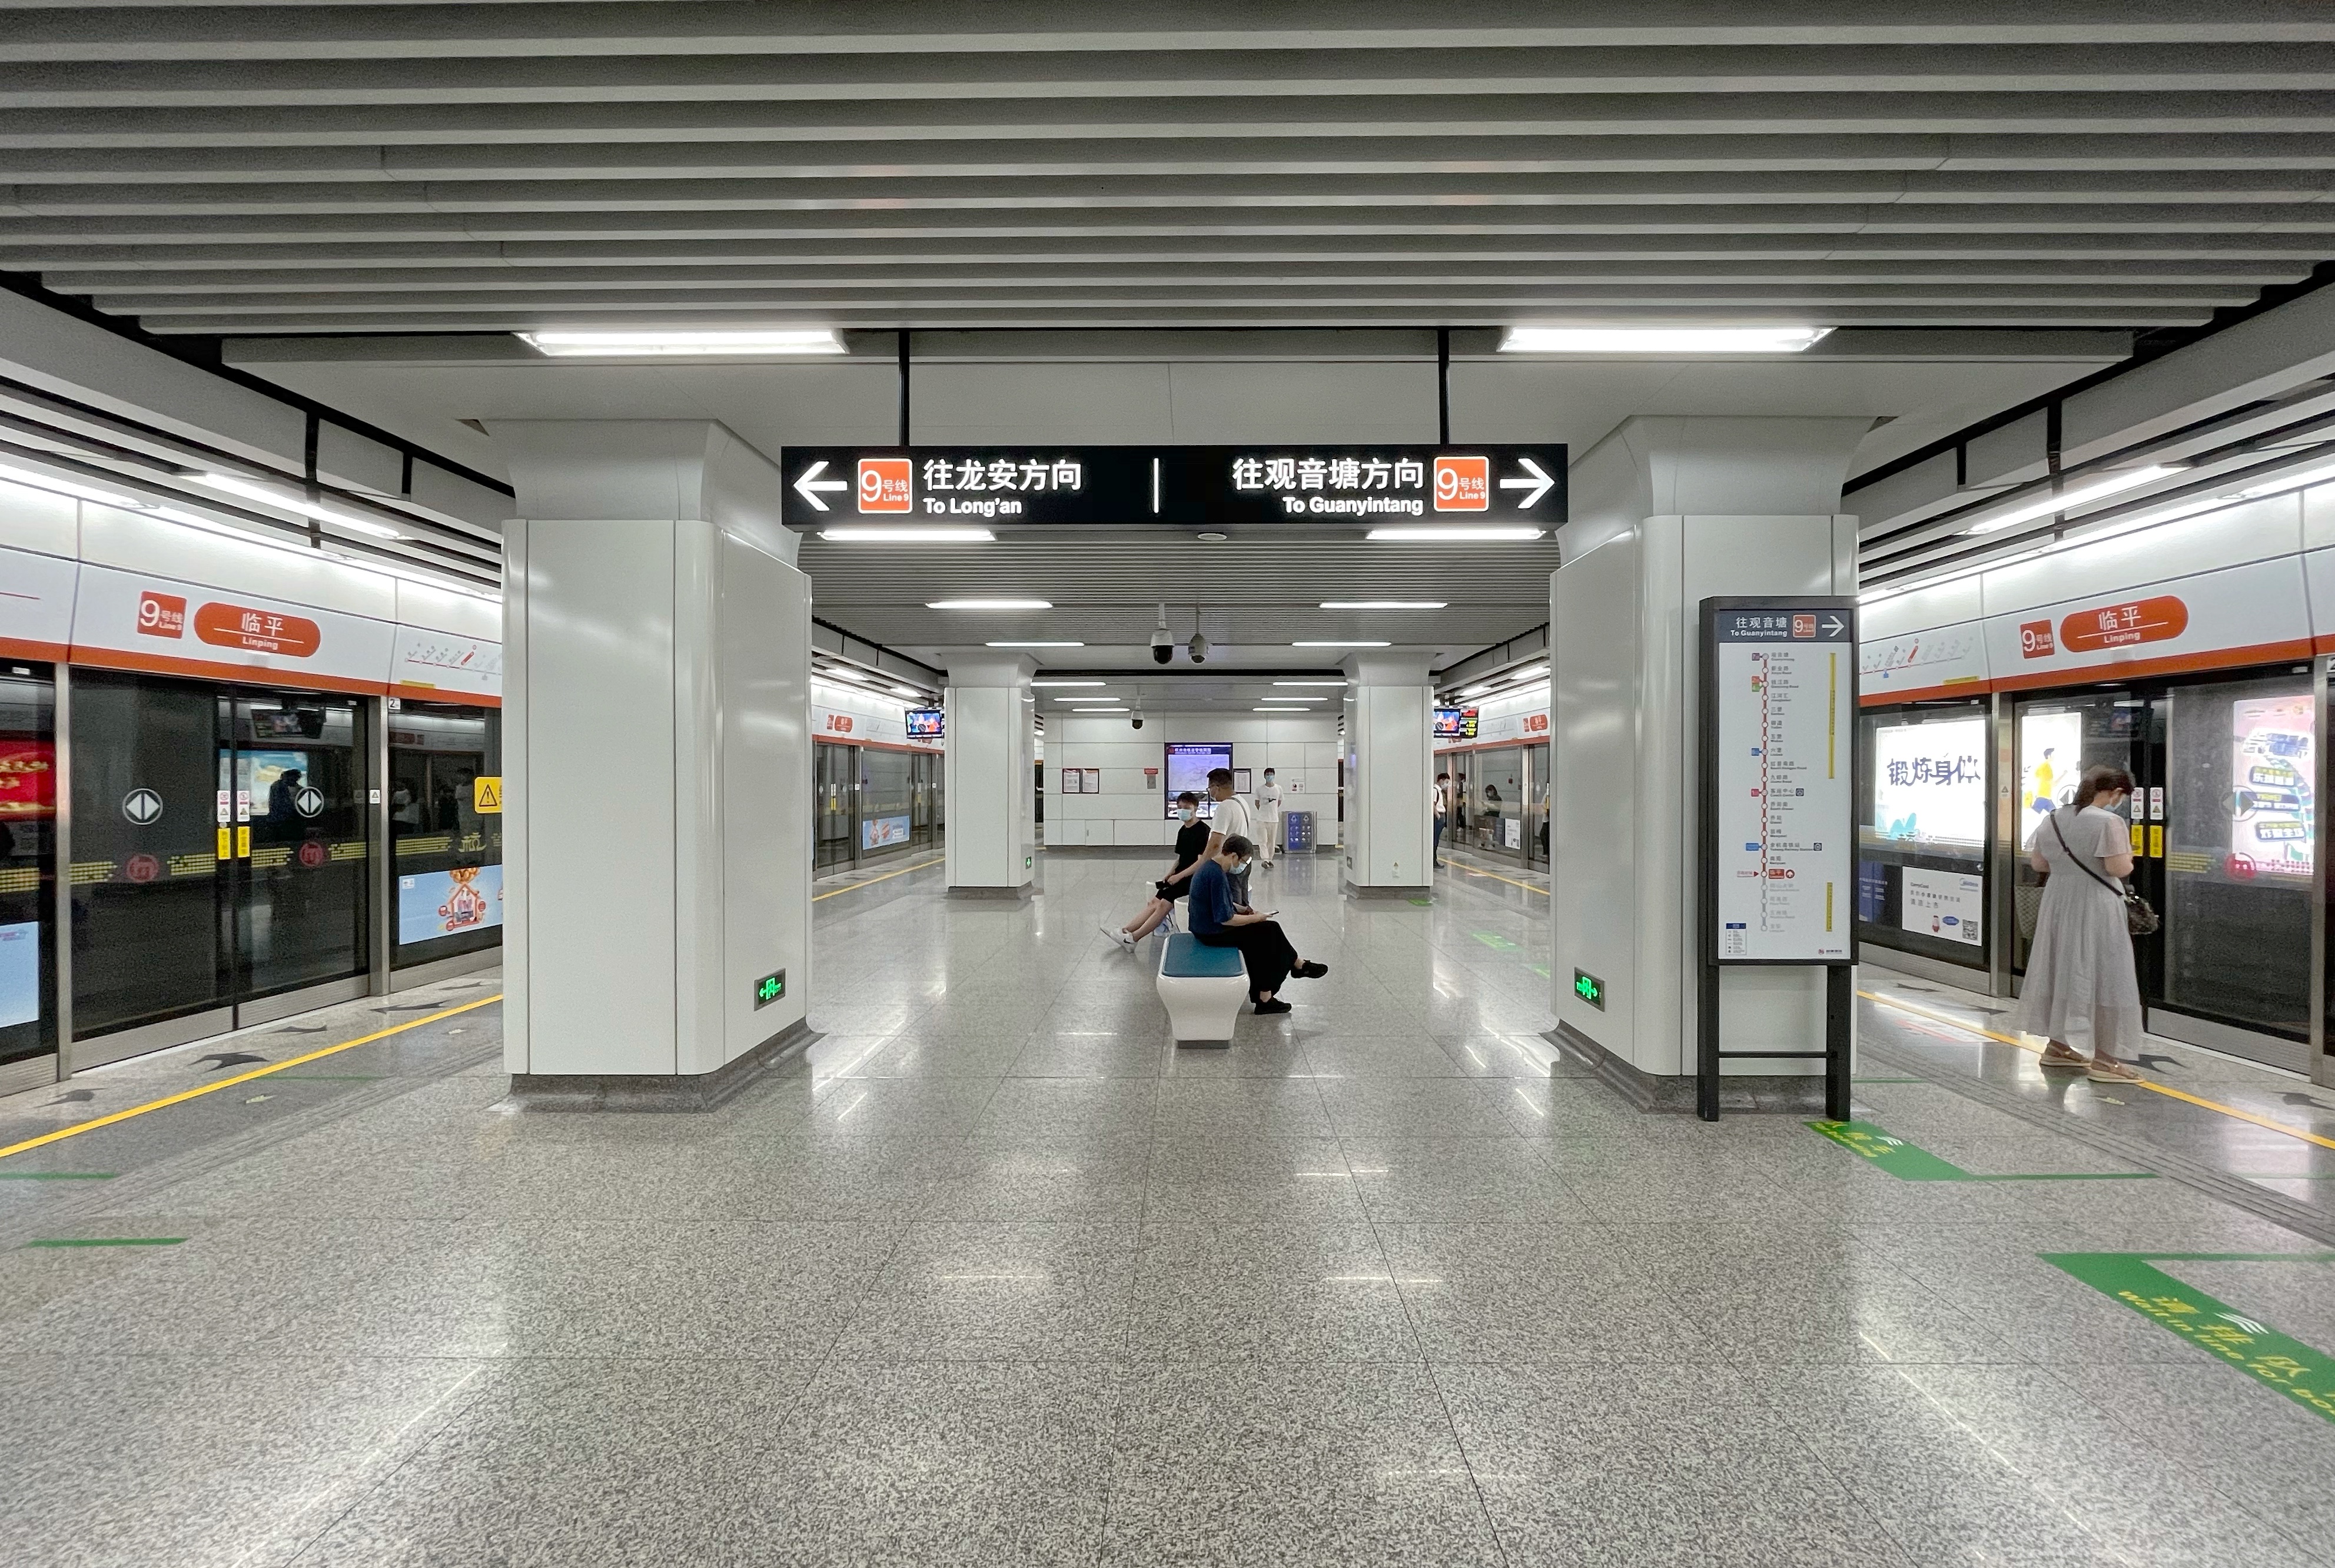 车更大等车时间更短换乘很方便坐上了杭州地铁9号线的临平居民却担心